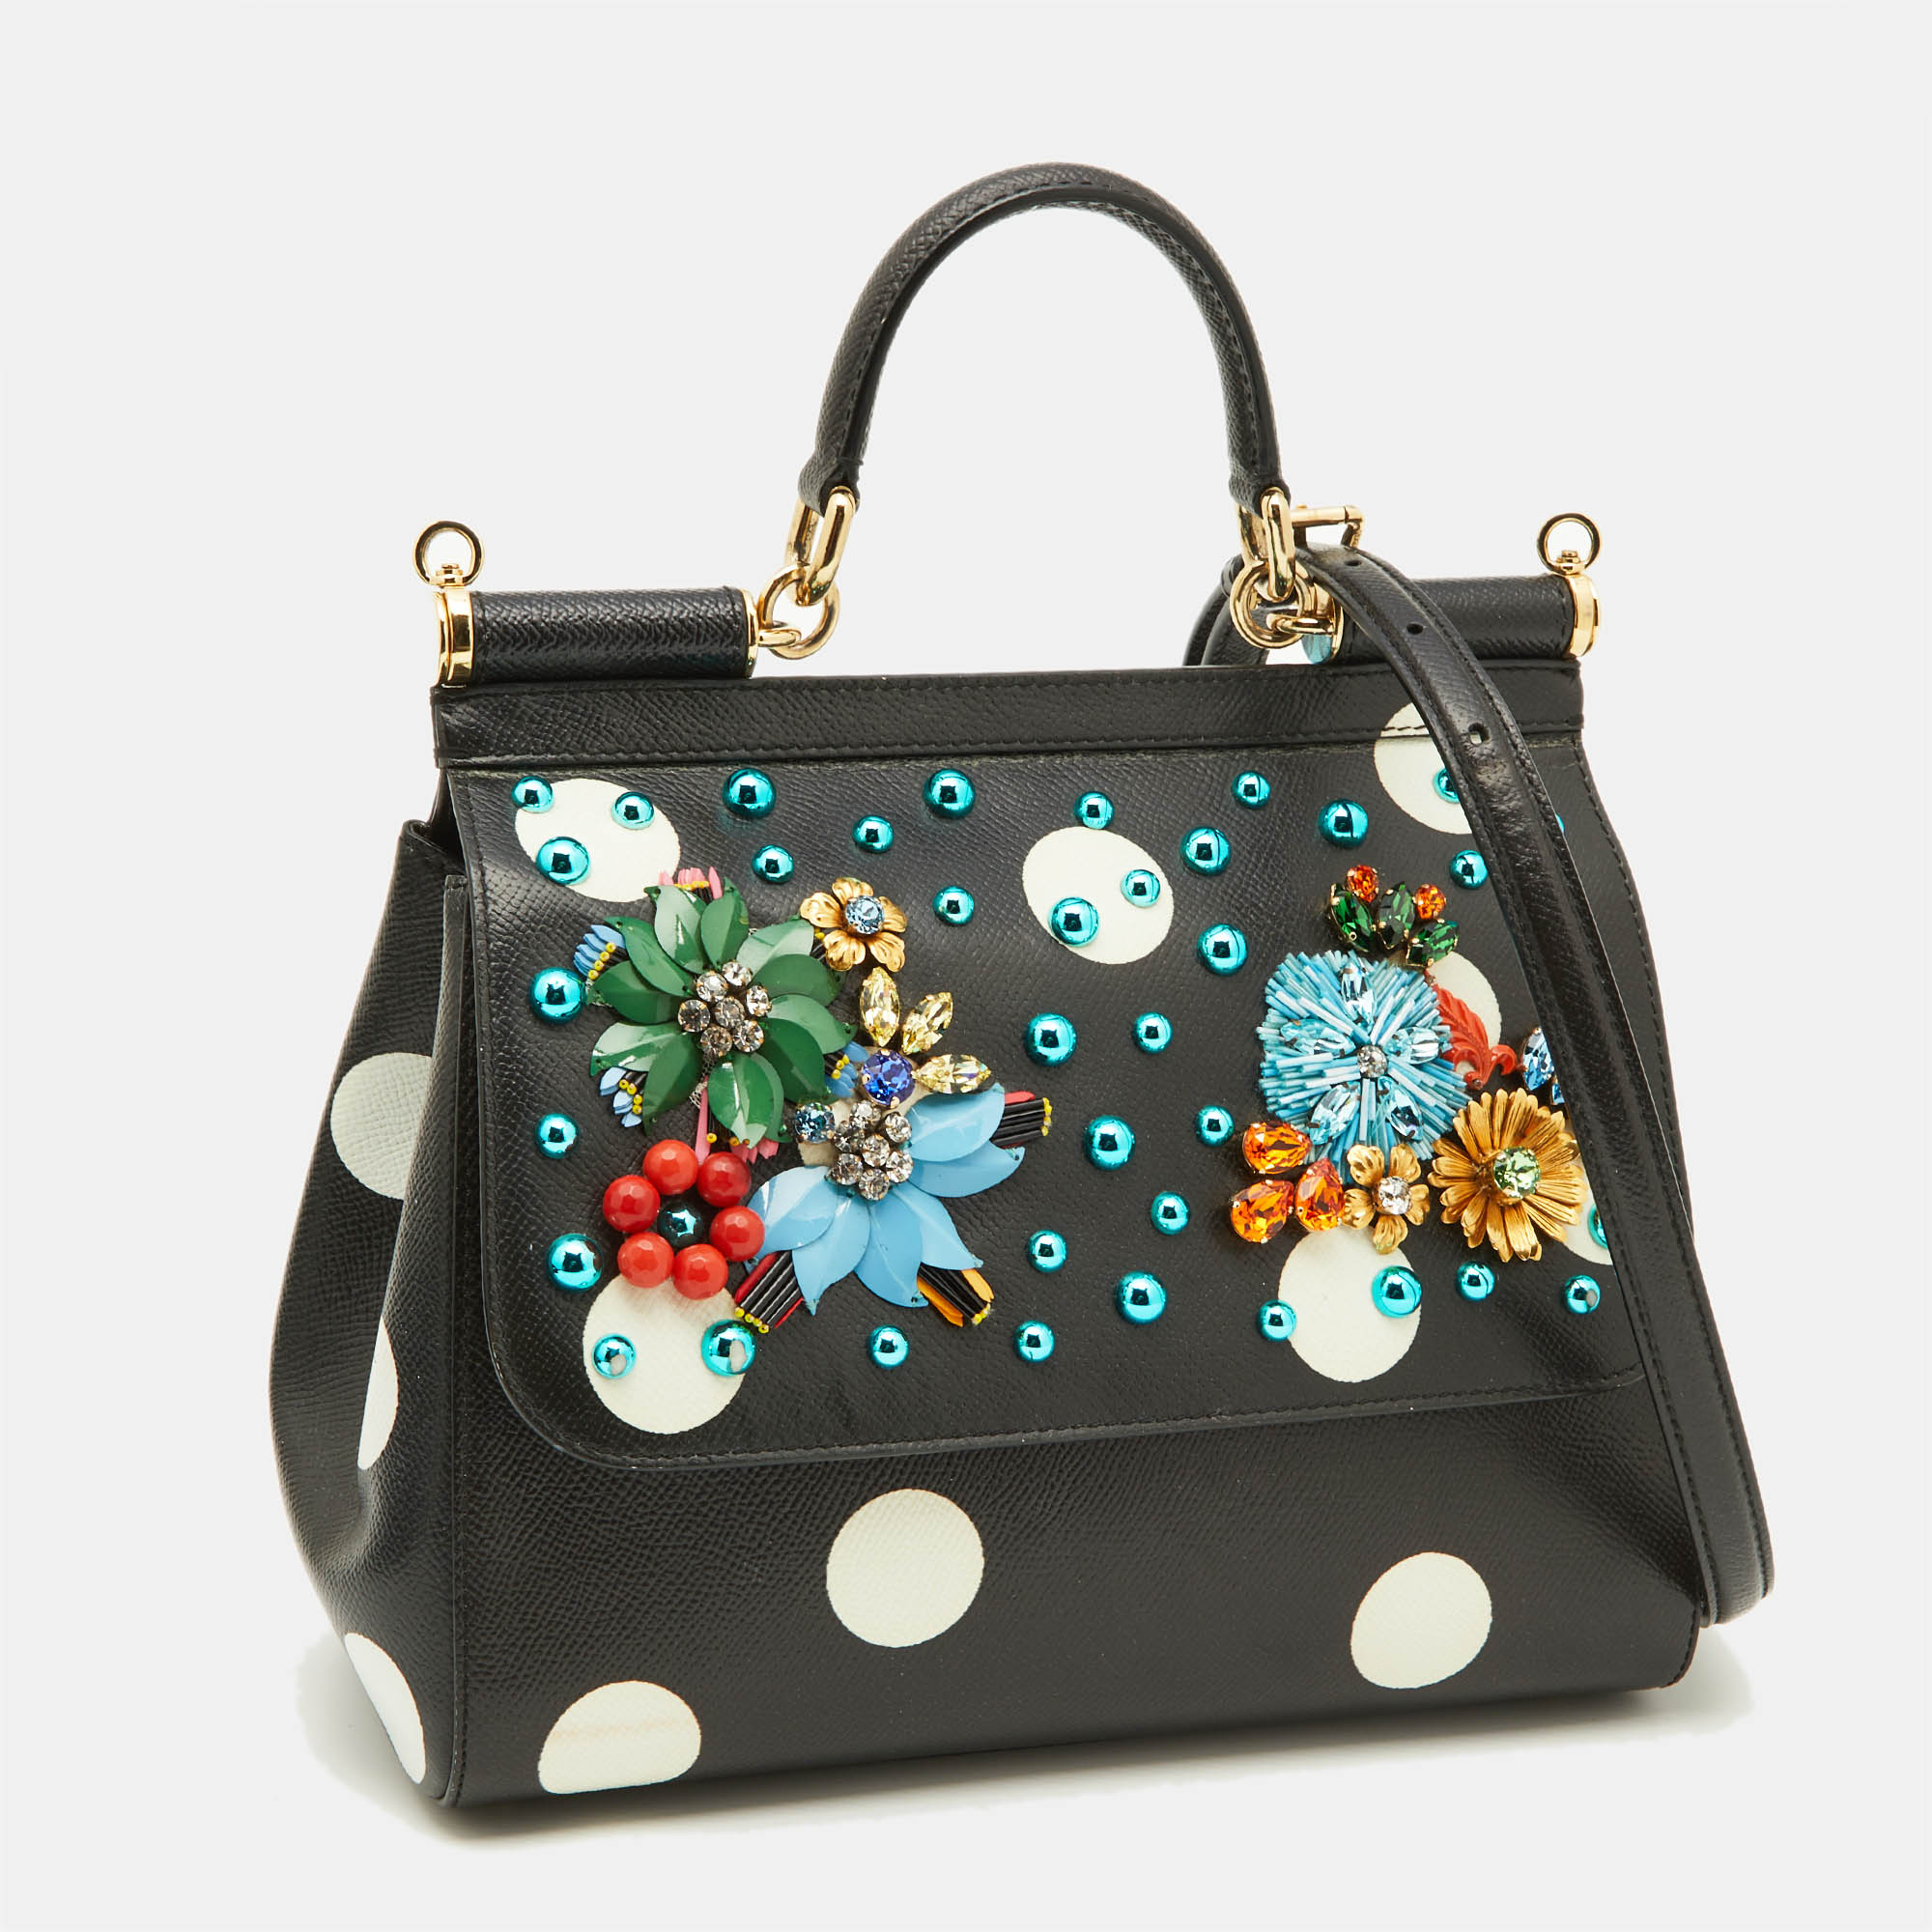 Dolce & Gabbana Black/White Polka Dot Leather Medium Crystal Embellished Miss Sicily Top Handle Bag